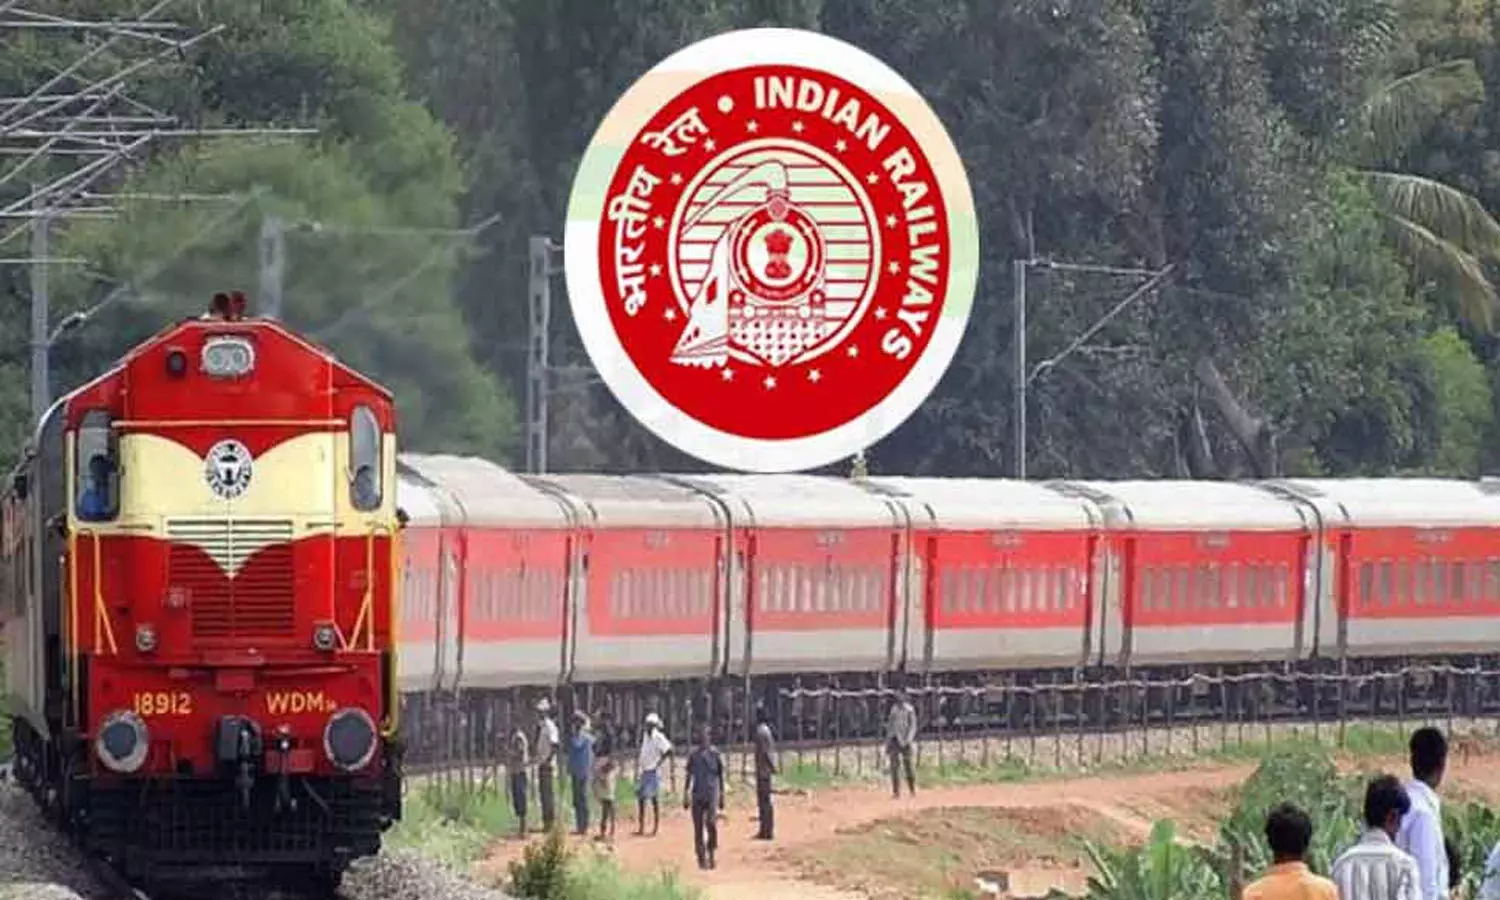 Sarkari Naukri: भारतीय रेलवे में बंपर वैकेंसी, ऐसे होगा चयन